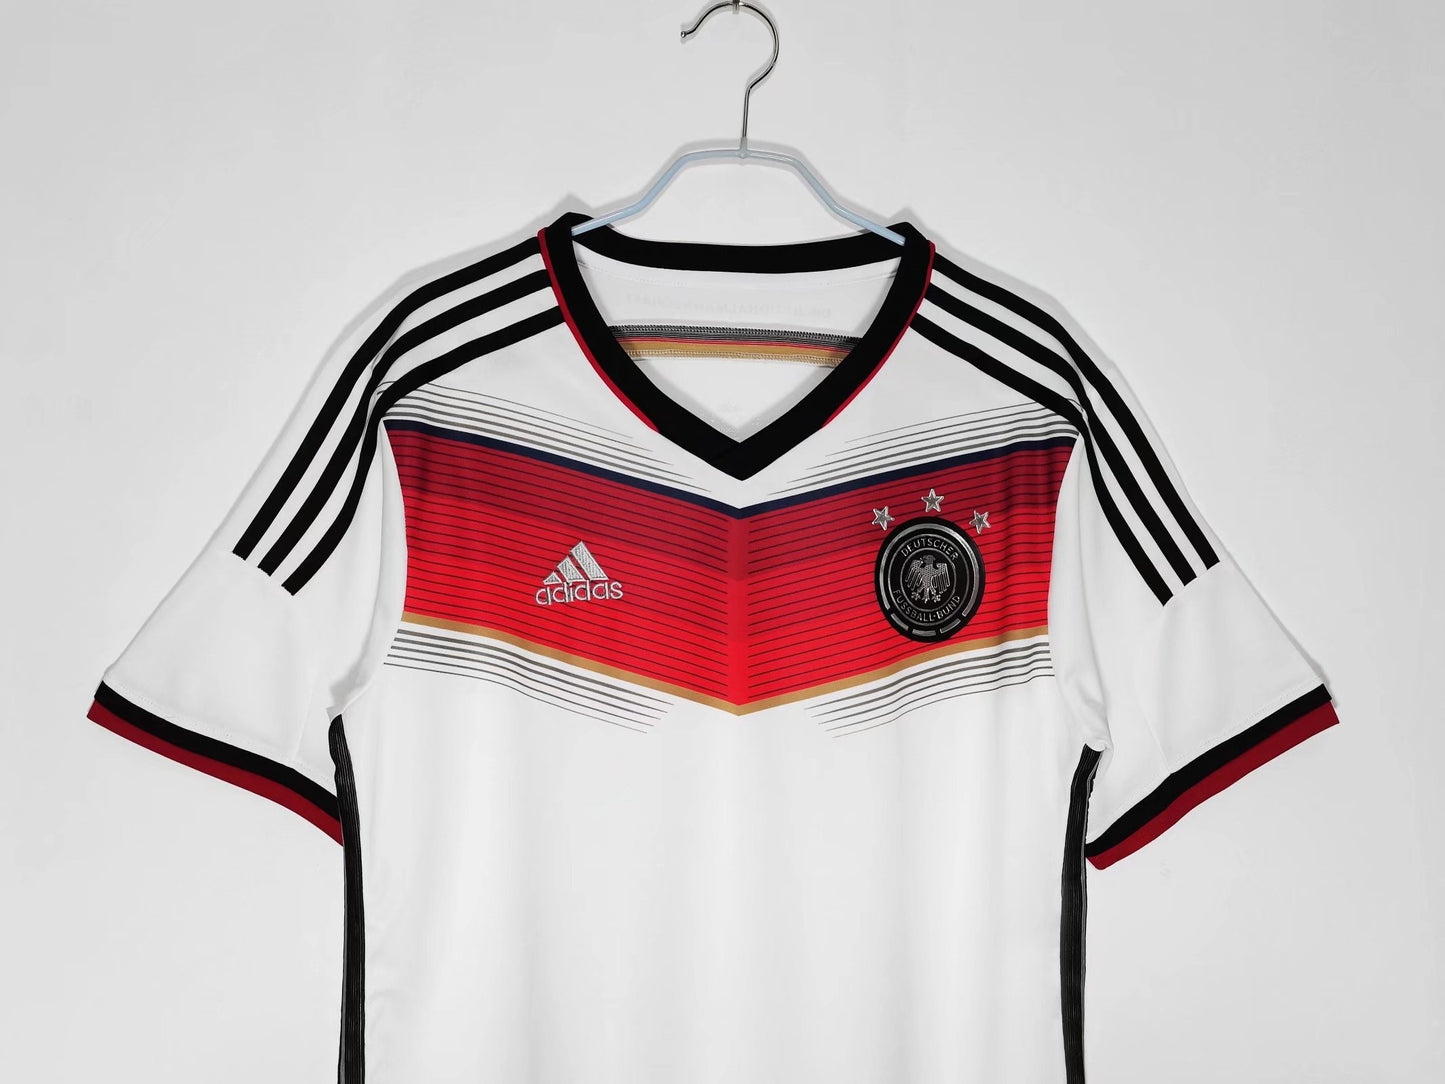 Germany 2014 vintage jersey